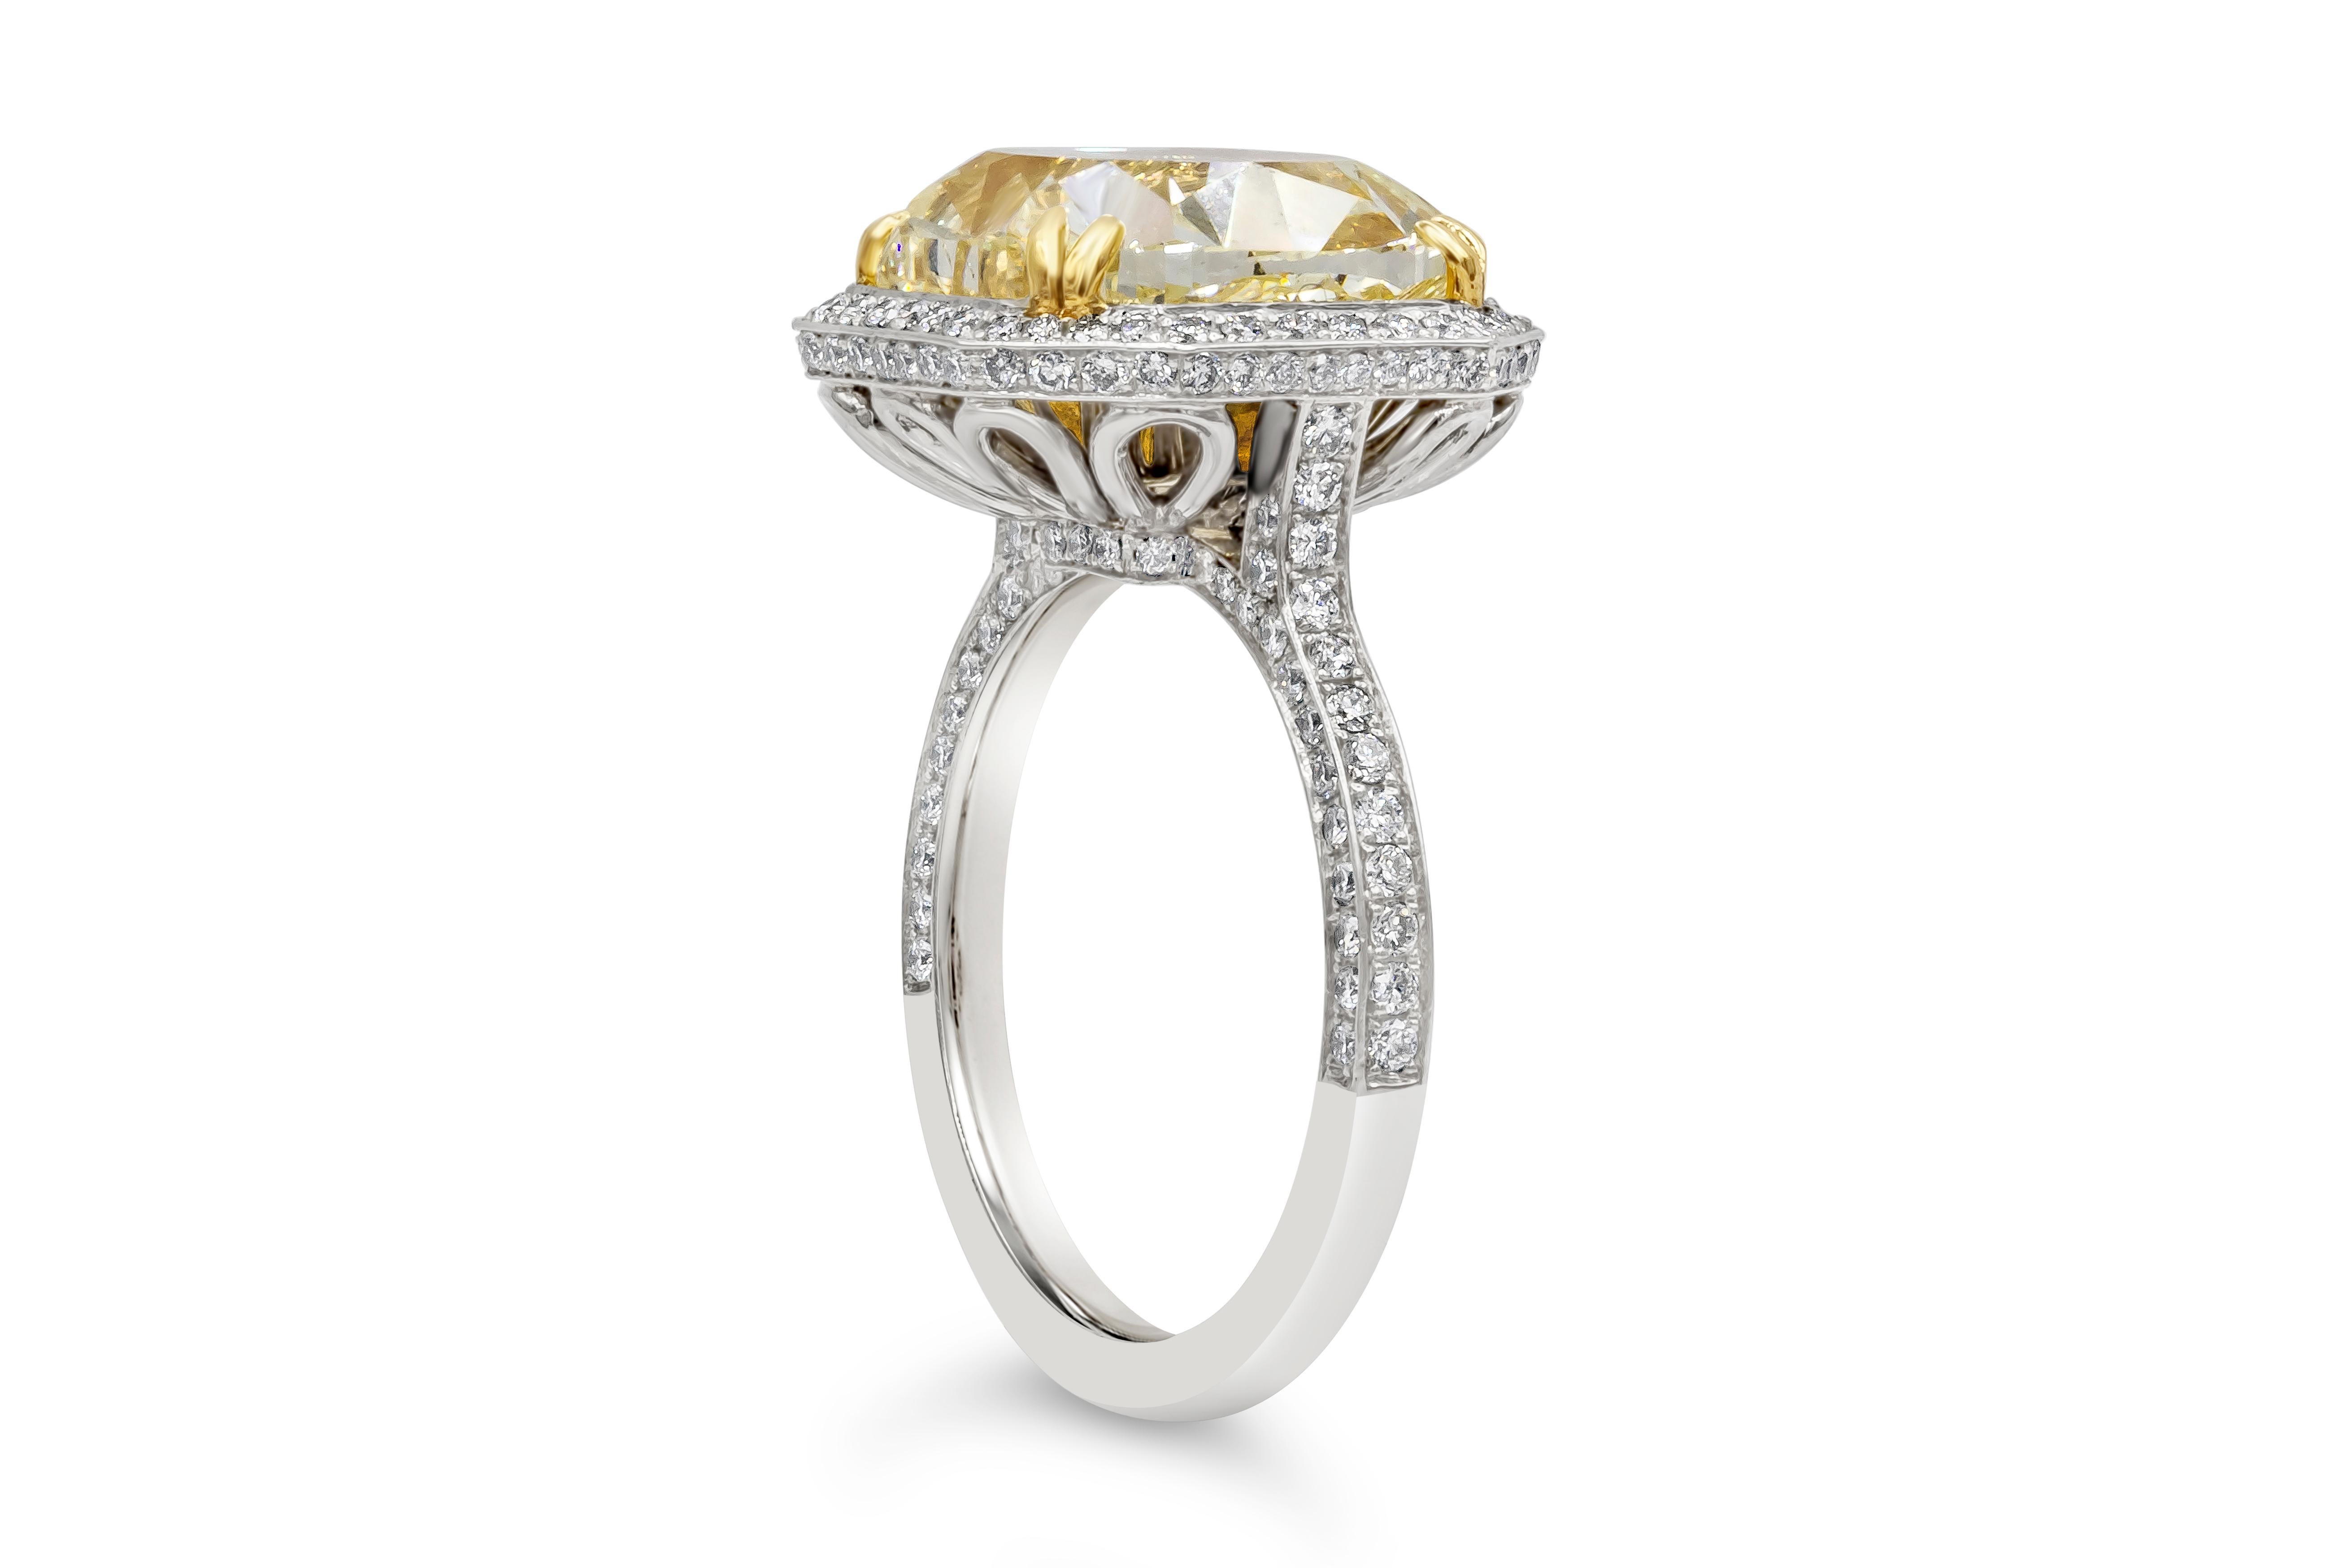 Bague de fiançailles de style halo, riche en couleurs, mettant en valeur une pierre centrale jaune fantaisie certifiée GIA de 7,64 carats de taille coussin, sertie dans un panier à huit branches en or jaune 18k. Entourée d'une rangée de diamants